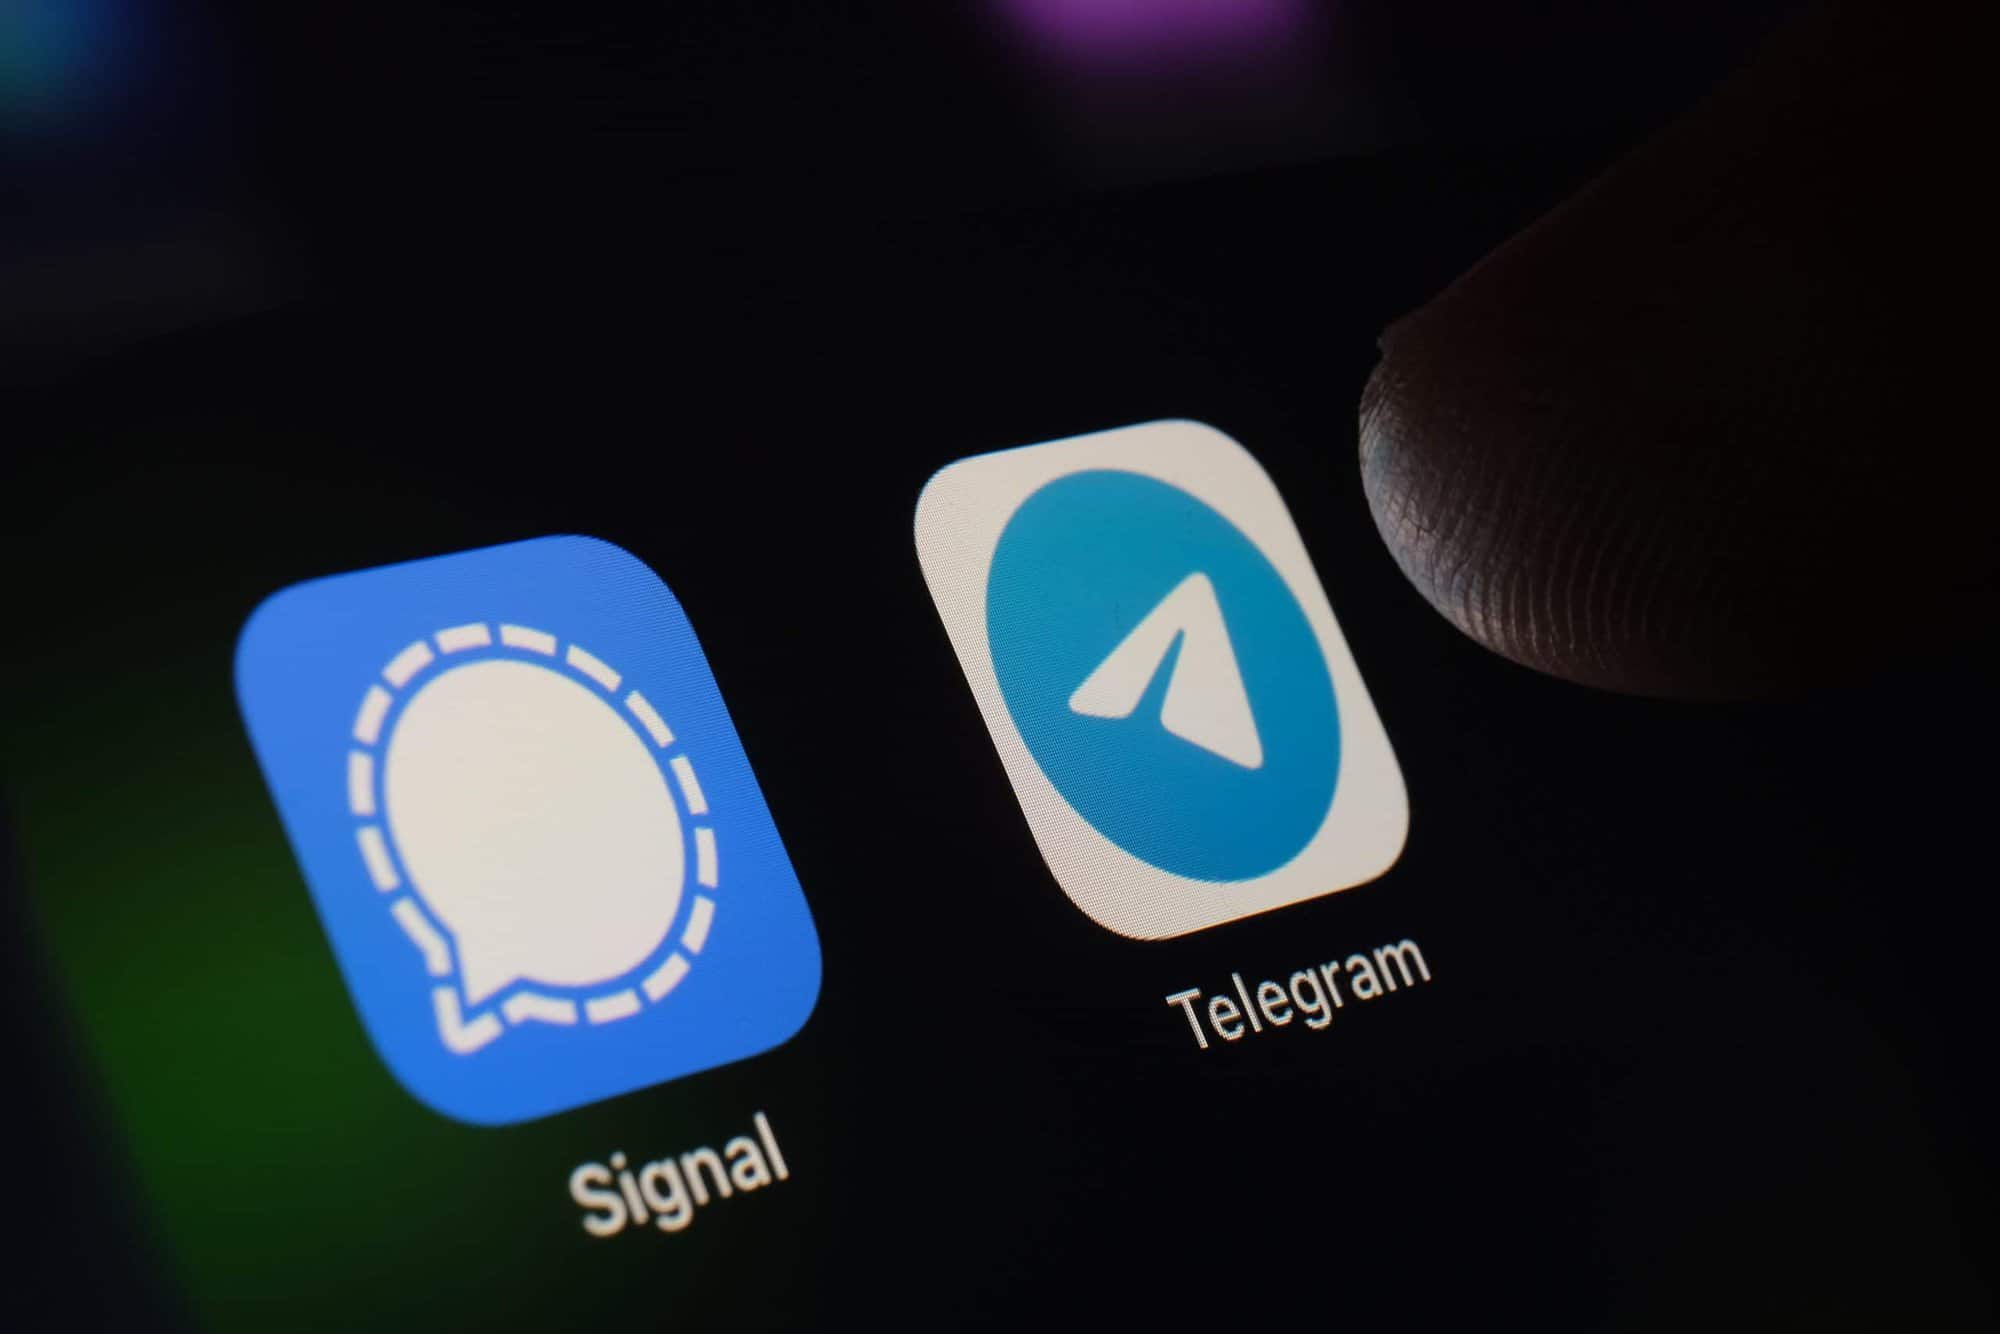 Signal - ứng dụng nhắn tin nổi tiếng với tính bảo mật và quyền riêng tư cao (Nguồn: Internet)